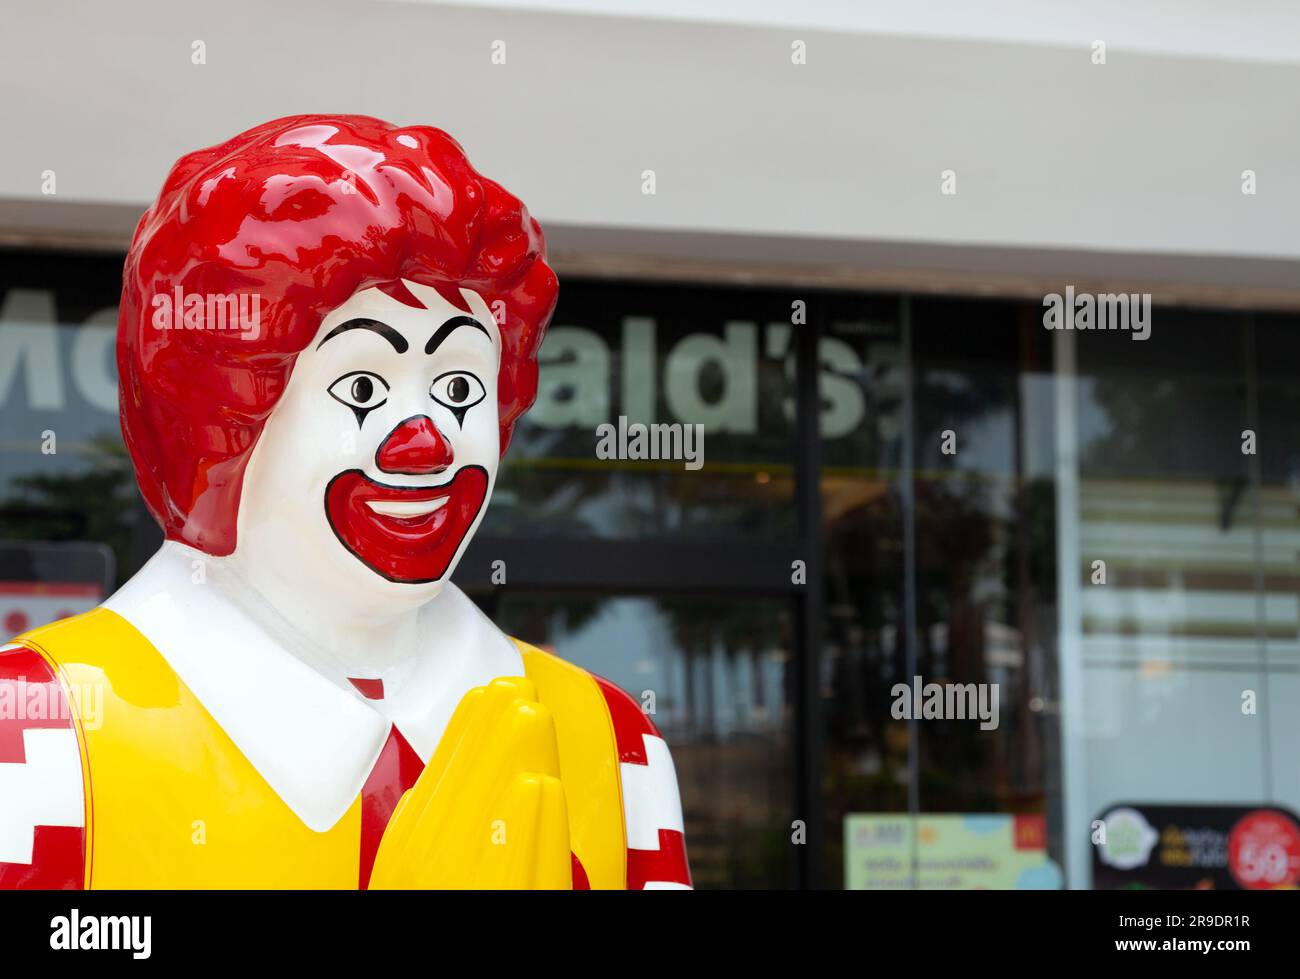 Estatua de plástico de Ronald McDonald saludando a los clientes con un gesto de namaste frente al restaurante McDonalds. Cadena de comida rápida colorida mascota meeting clien Foto de stock